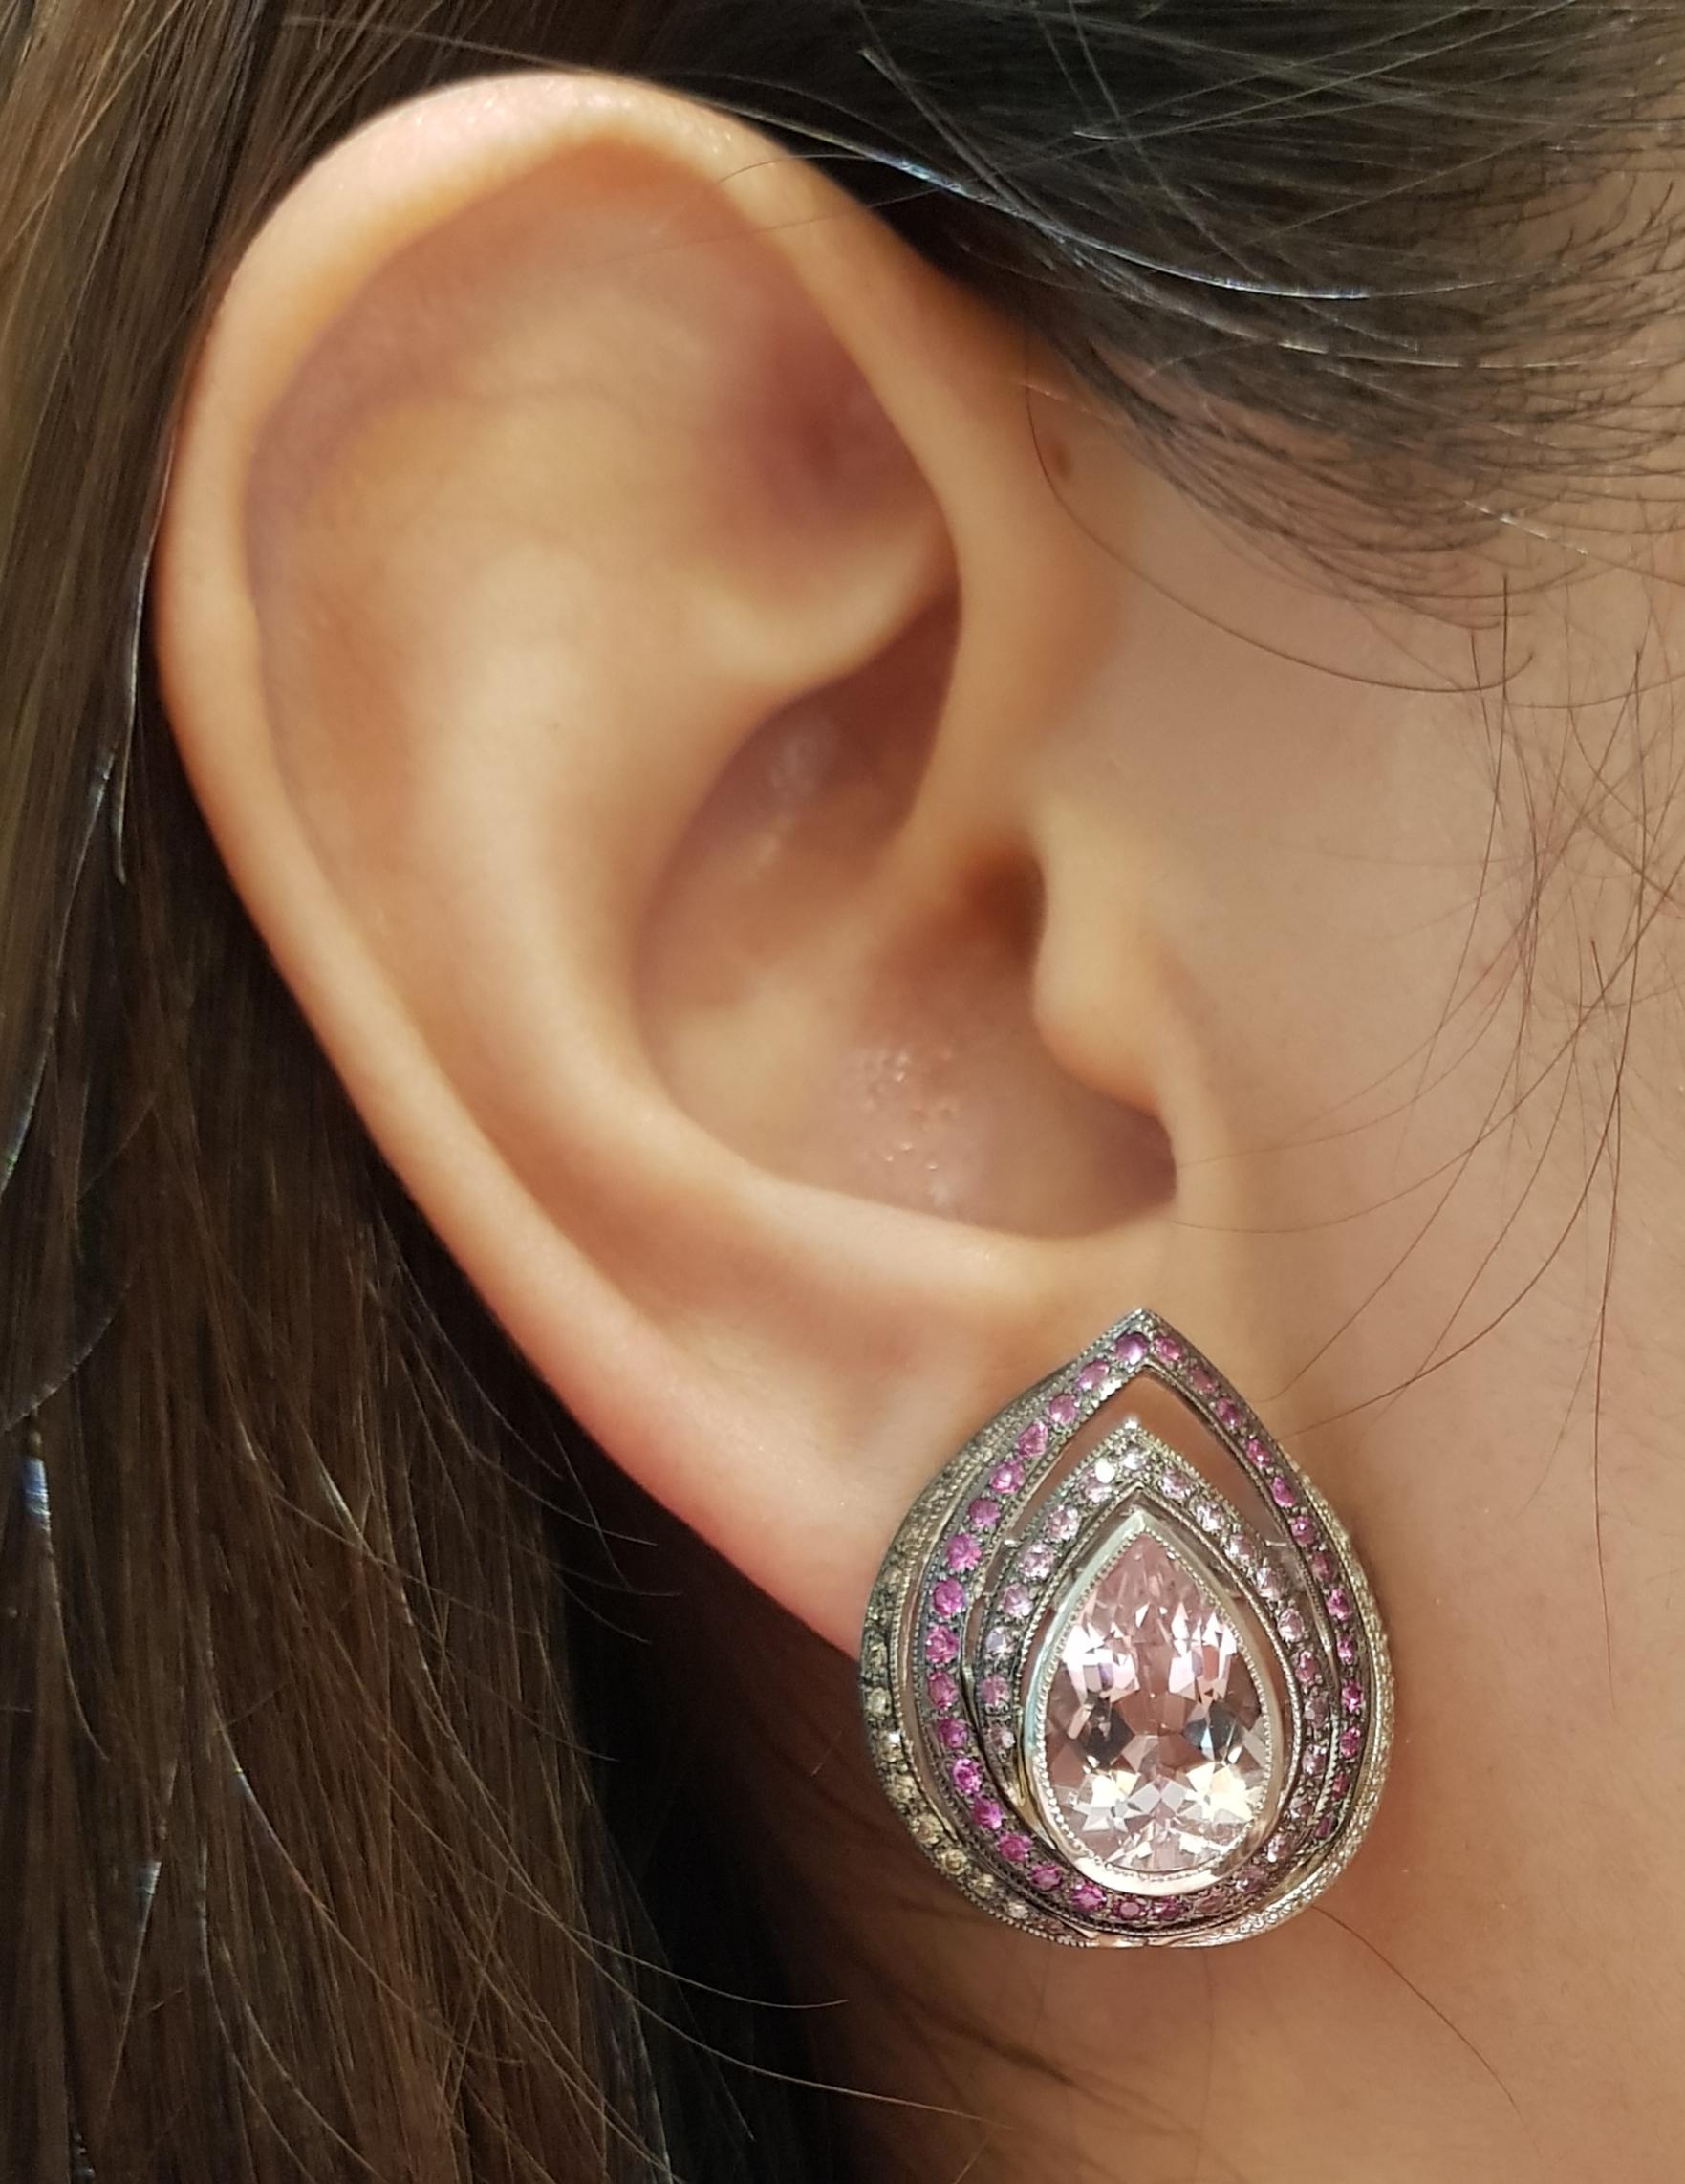 Kunzit 5,55 Karat, rosa Saphir 1,13 Karat mit Diamant 0,13 Karat Ohrringe in 18 Karat Weißgoldfassung

Breite:  2.0 cm 
Länge: 2,4 cm
Gesamtgewicht: 15,29 Gramm

